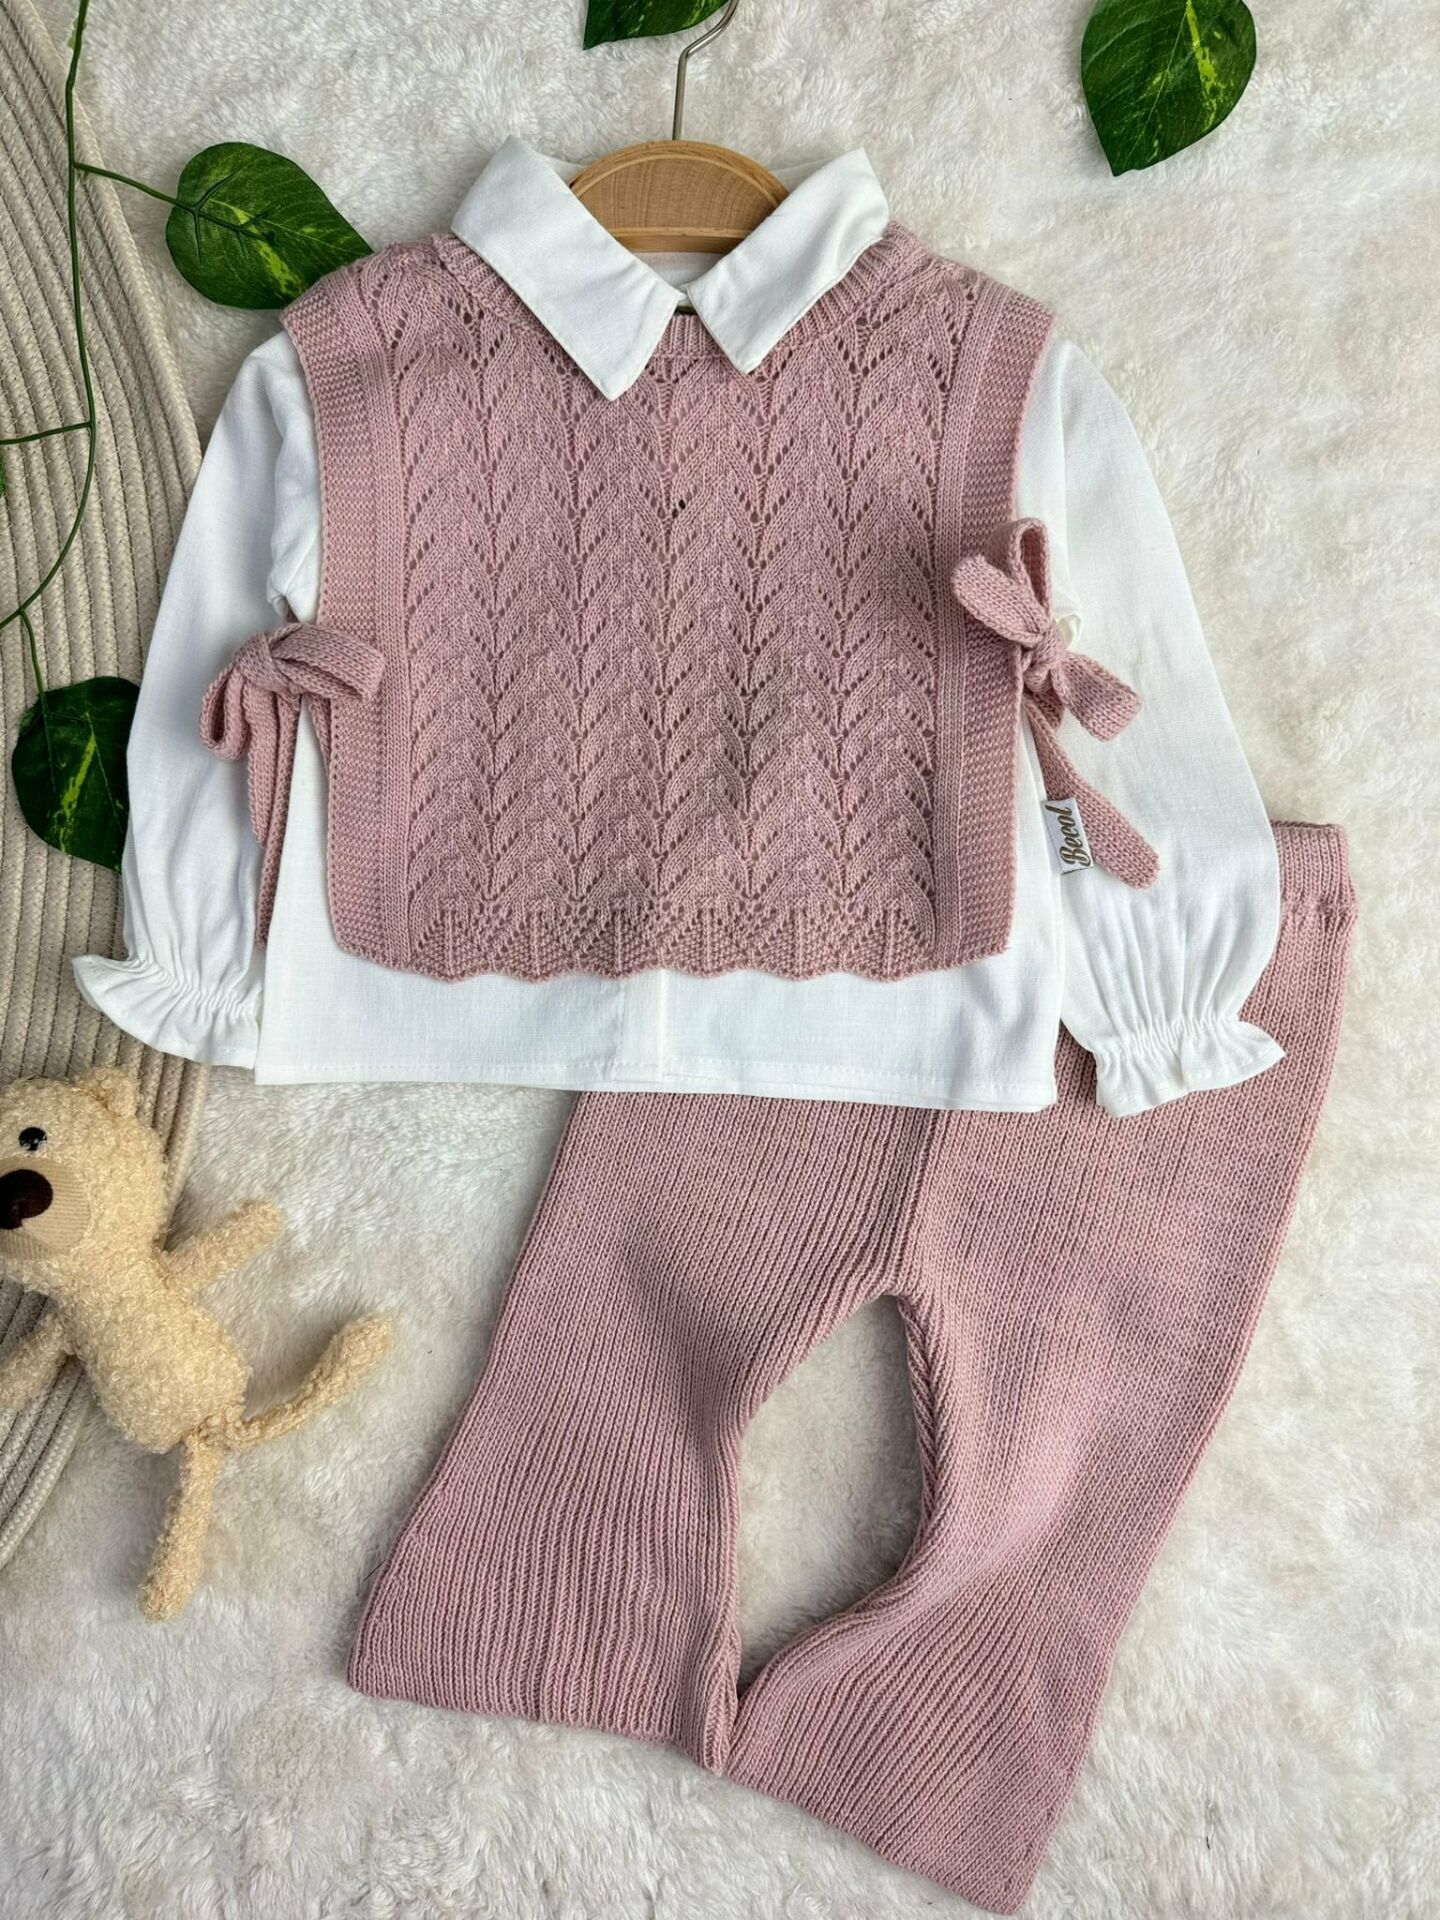 Amelia Süveterli Gömlekli 3'lü Triko Premium Kız Bebek Takım gül kurusu - 9 Ay